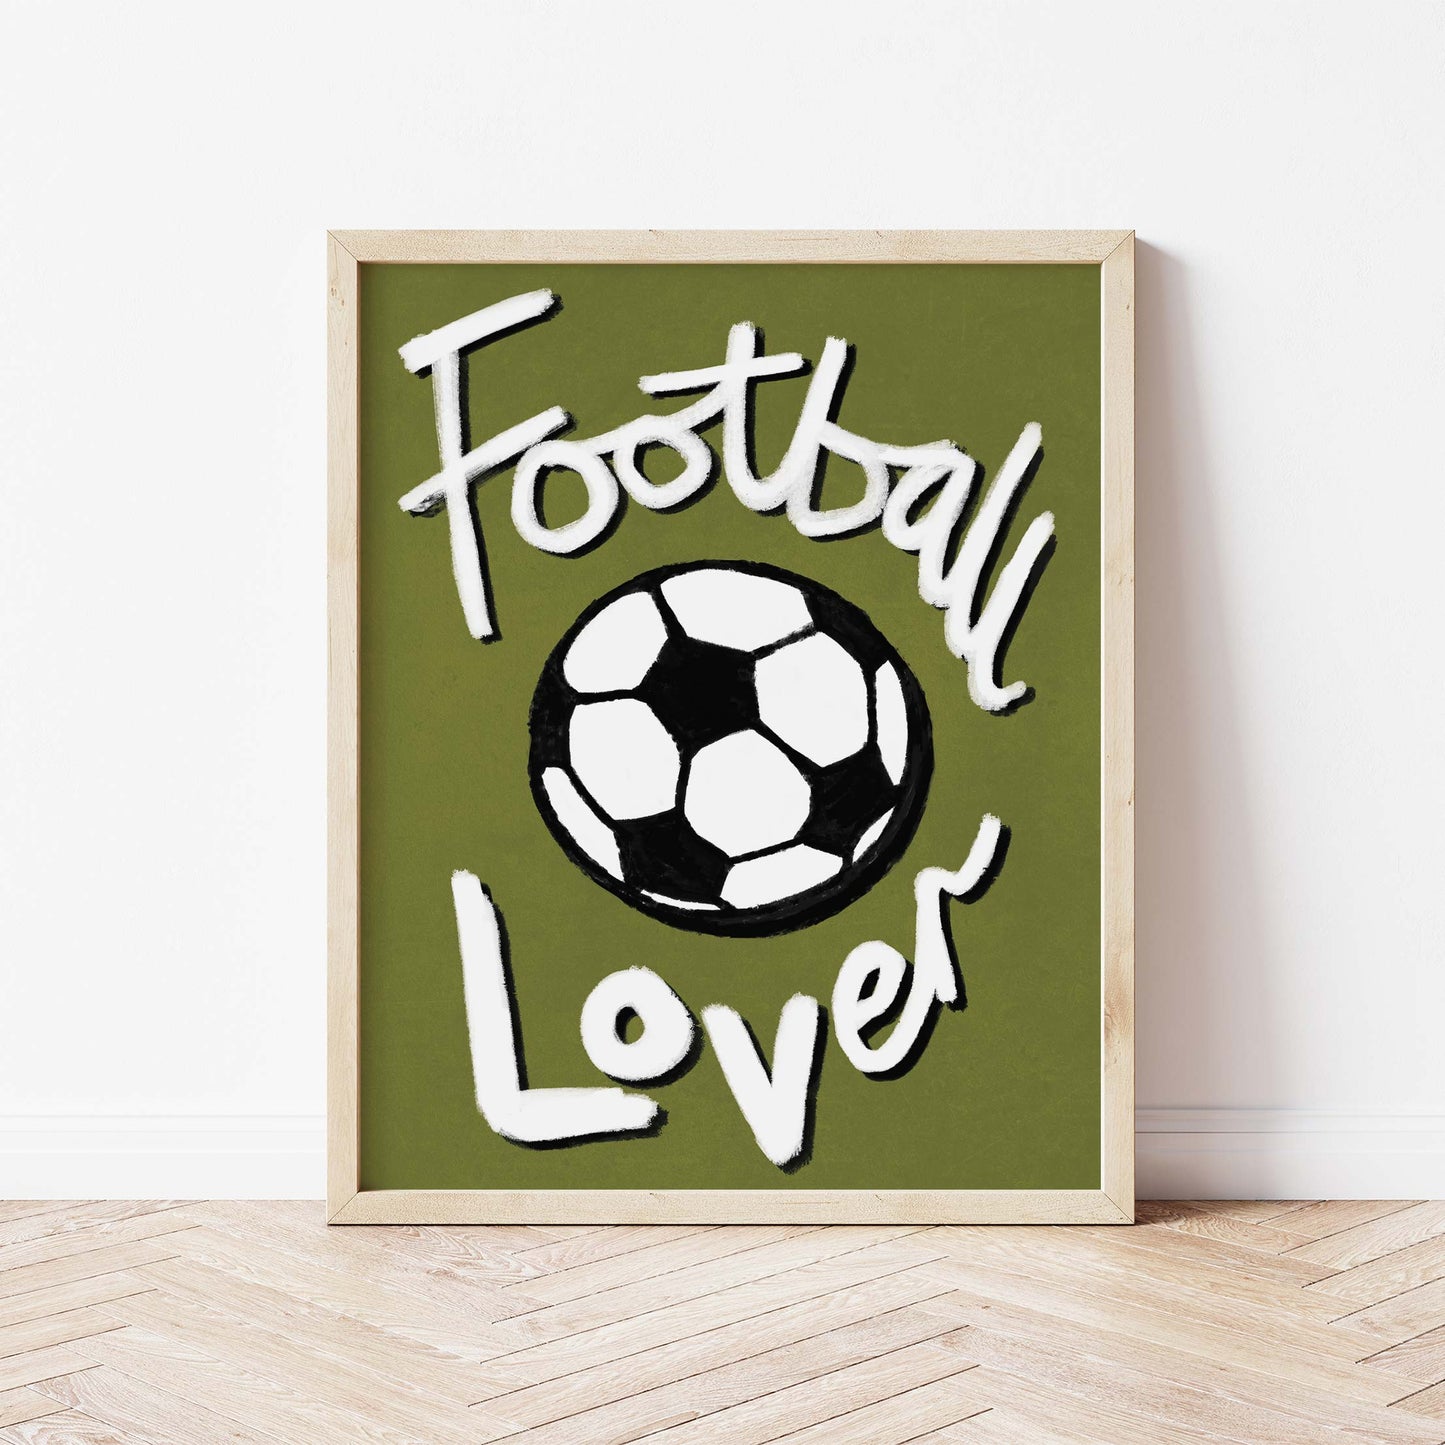 Football Lover Print - Olive Green, Black, White Framed Print